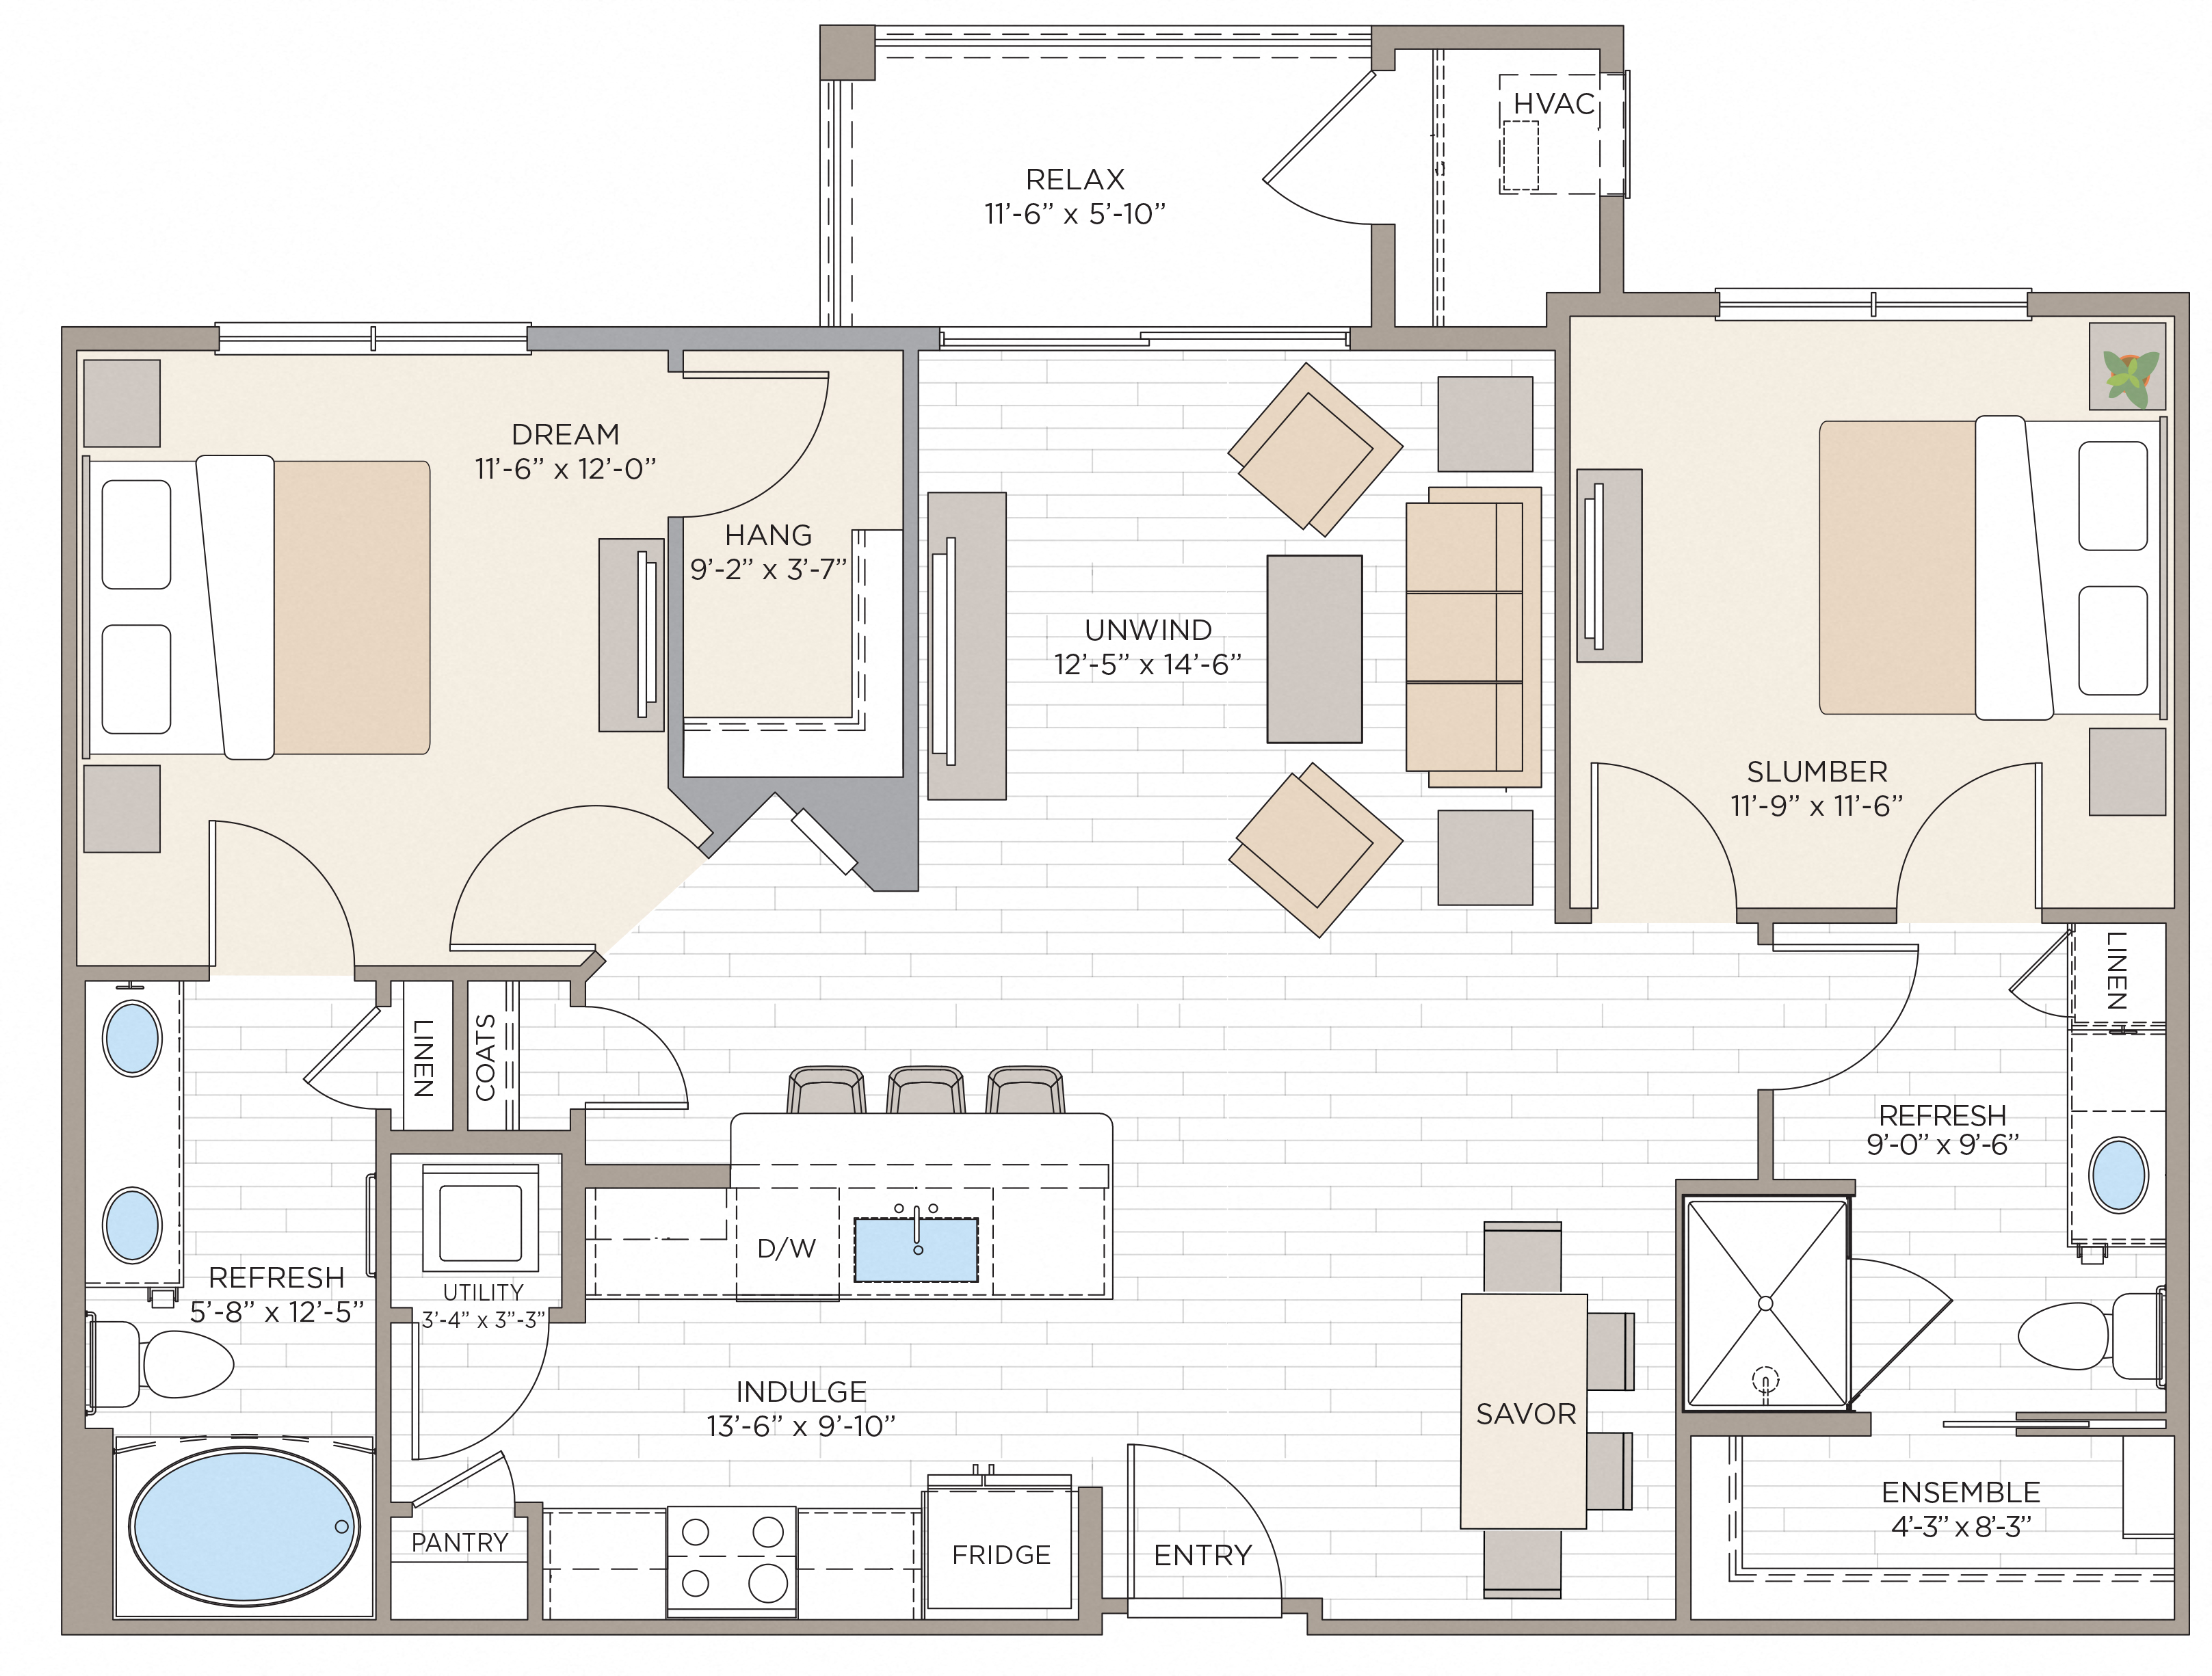 Floorplan for Apartment #14413, 2 bedroom unit at Halstead Maynard Crossing